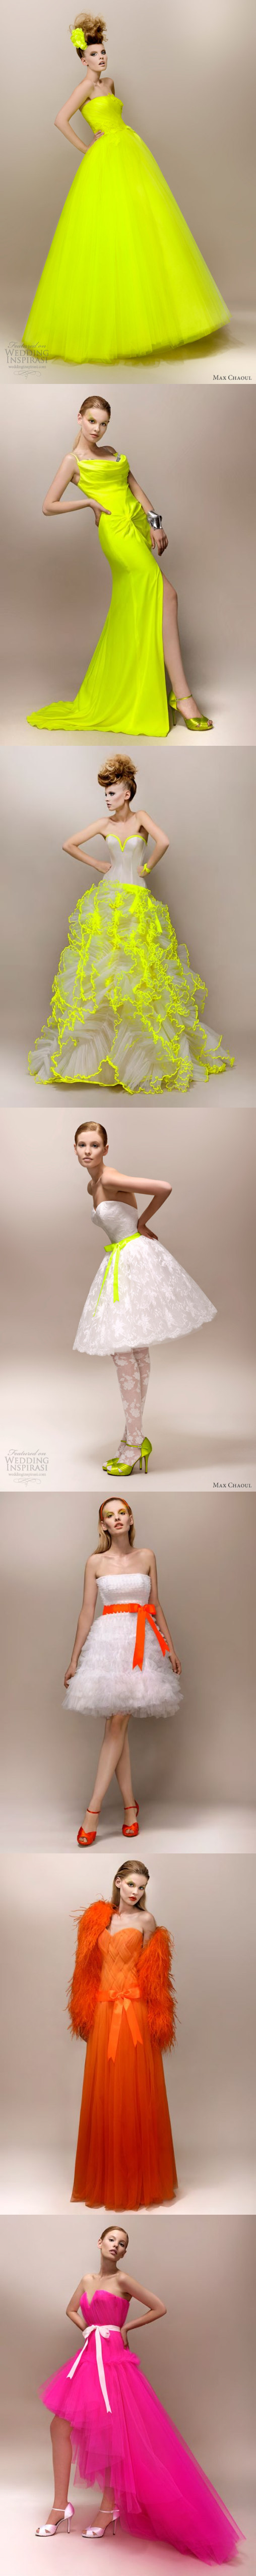 Une série de robe de mariée lumineuse créées par Max chaoul.